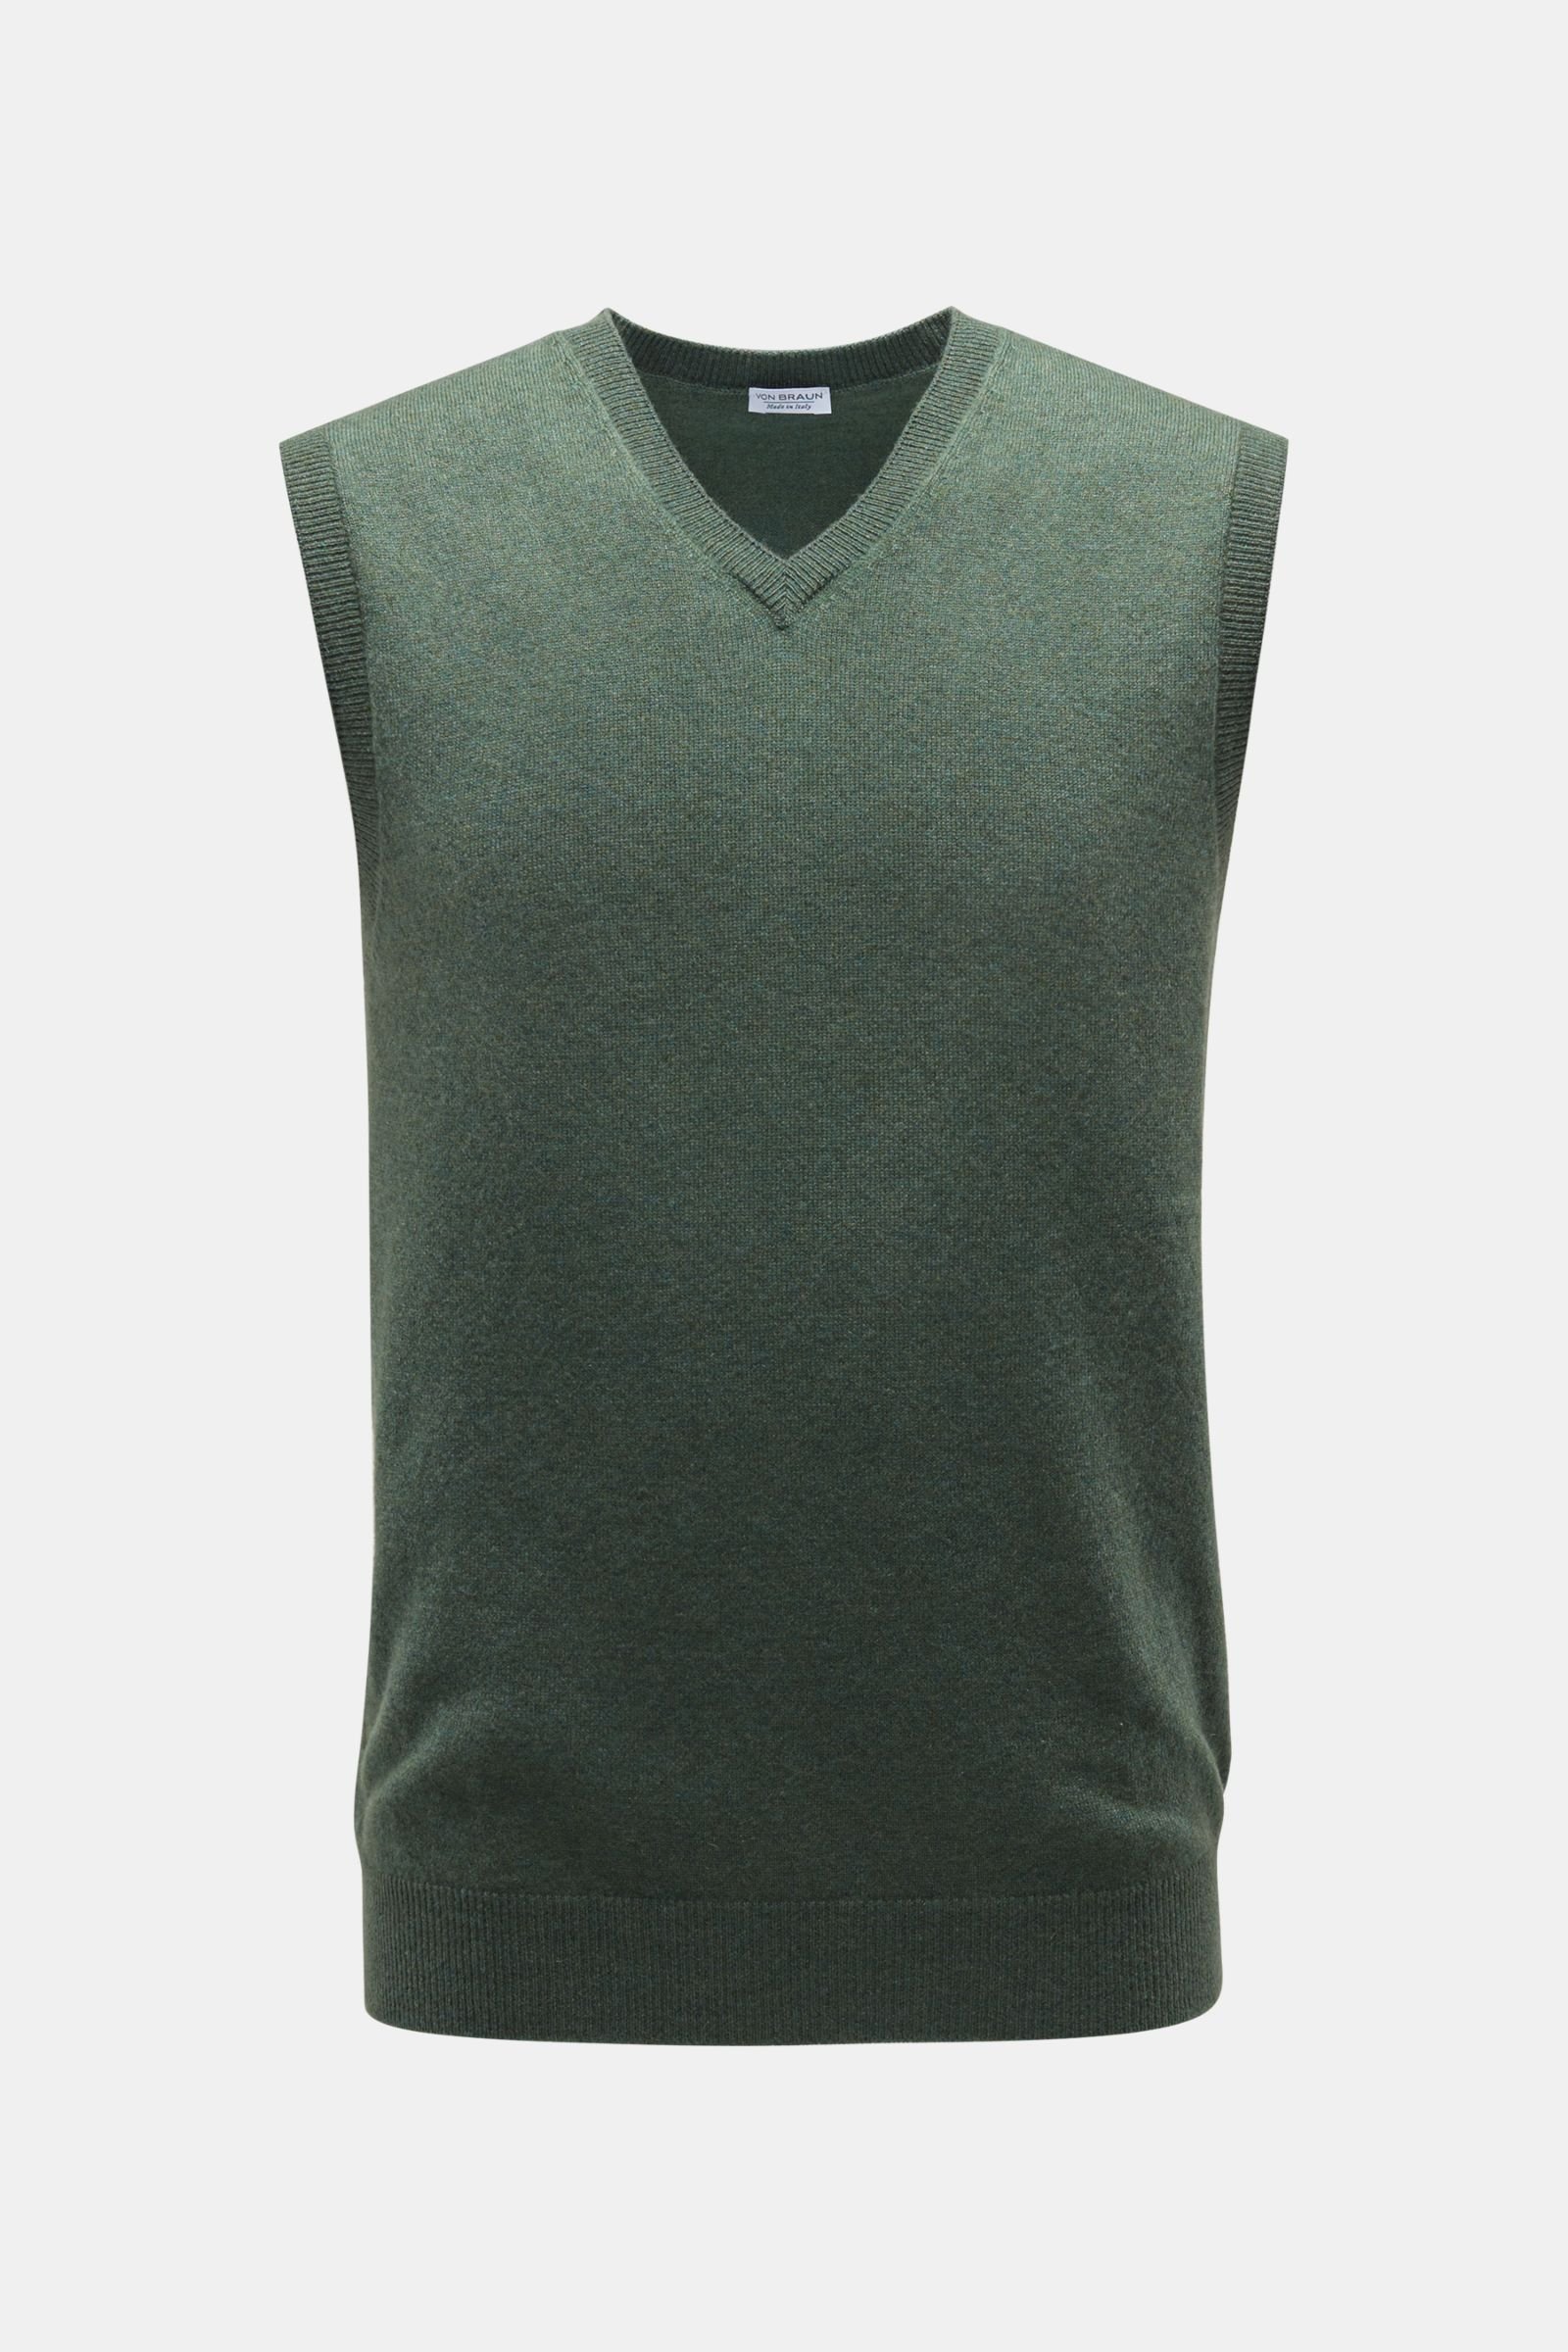 Cashmere V-neck sweater vest grey-green